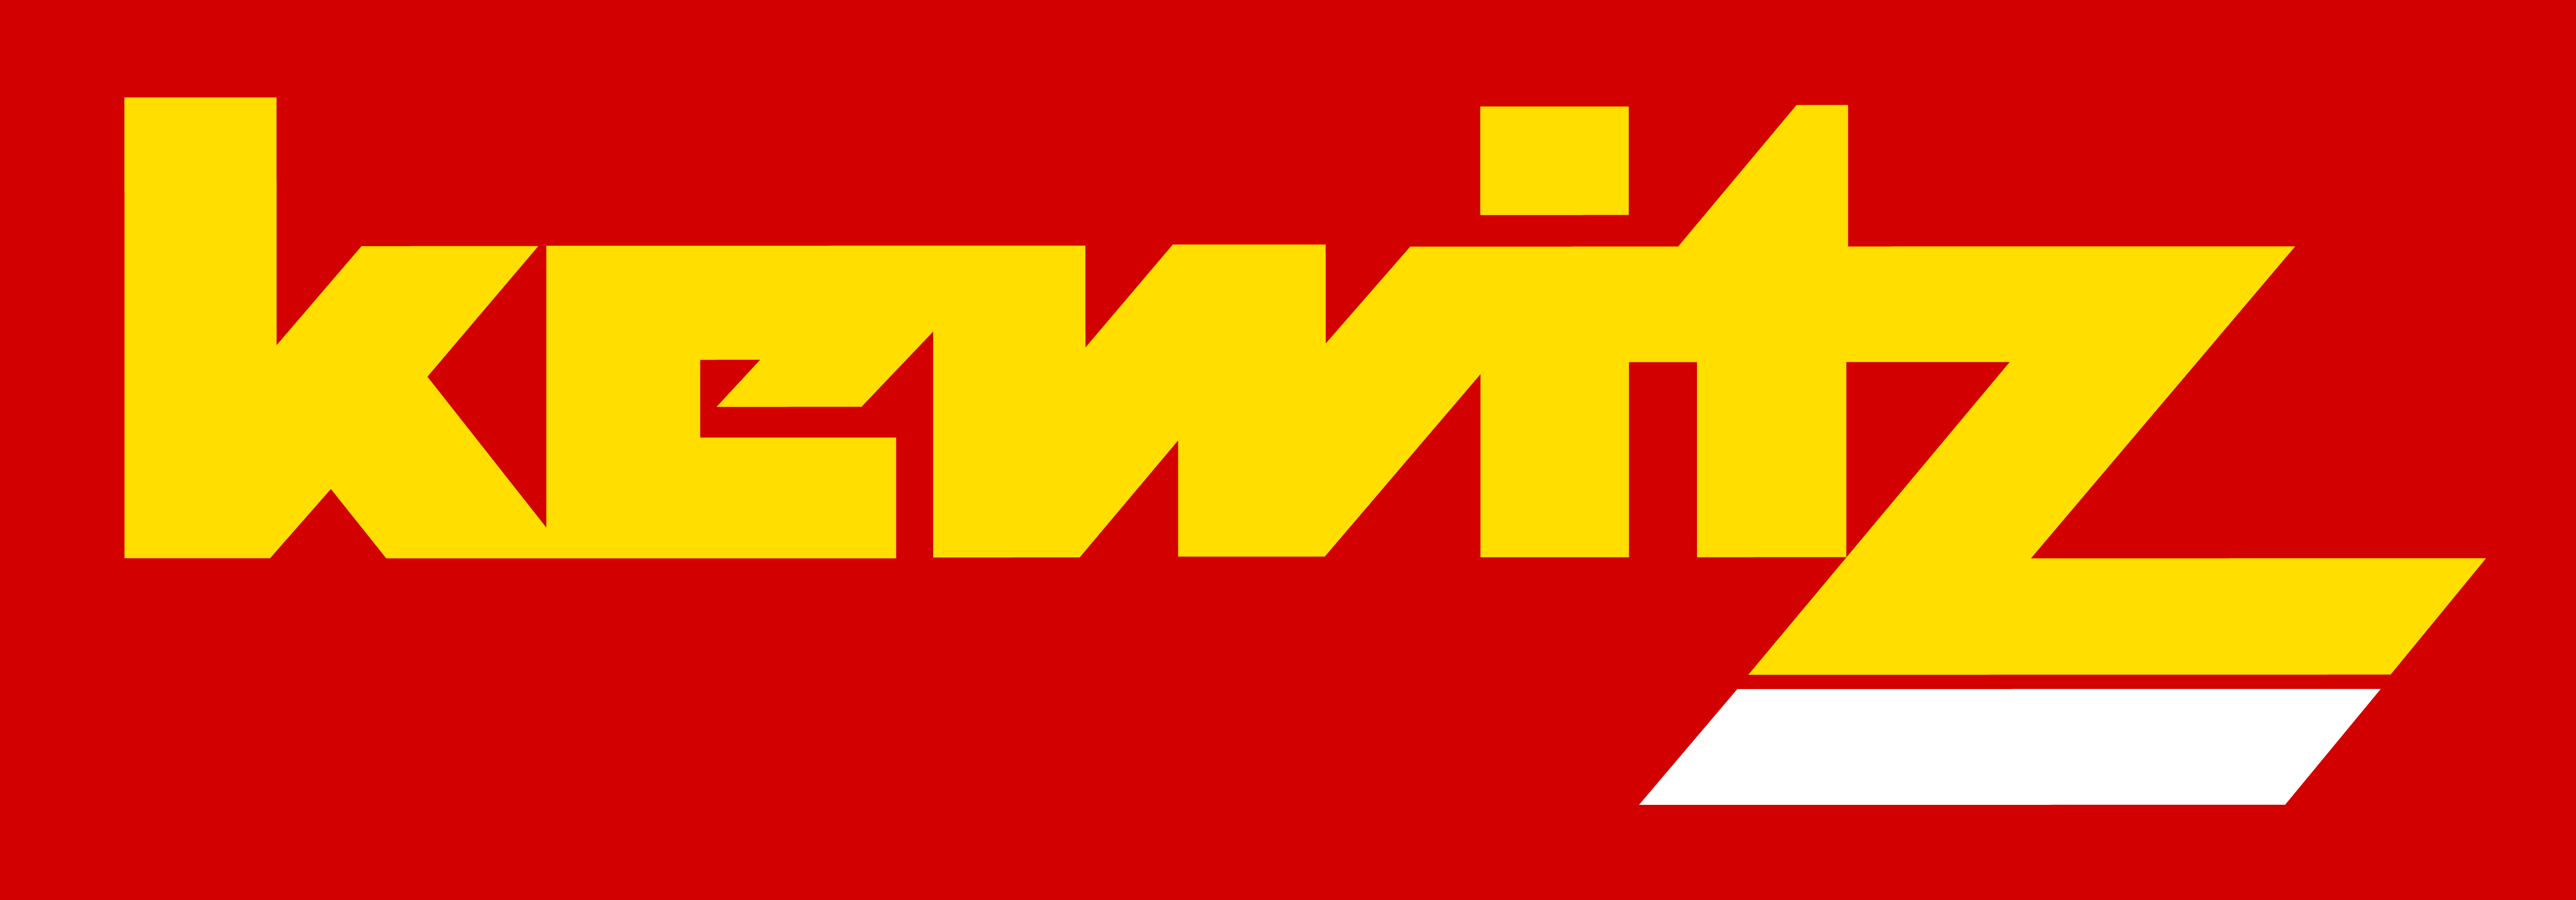 Logo Viktor Kewitz GmbH & Co. KG